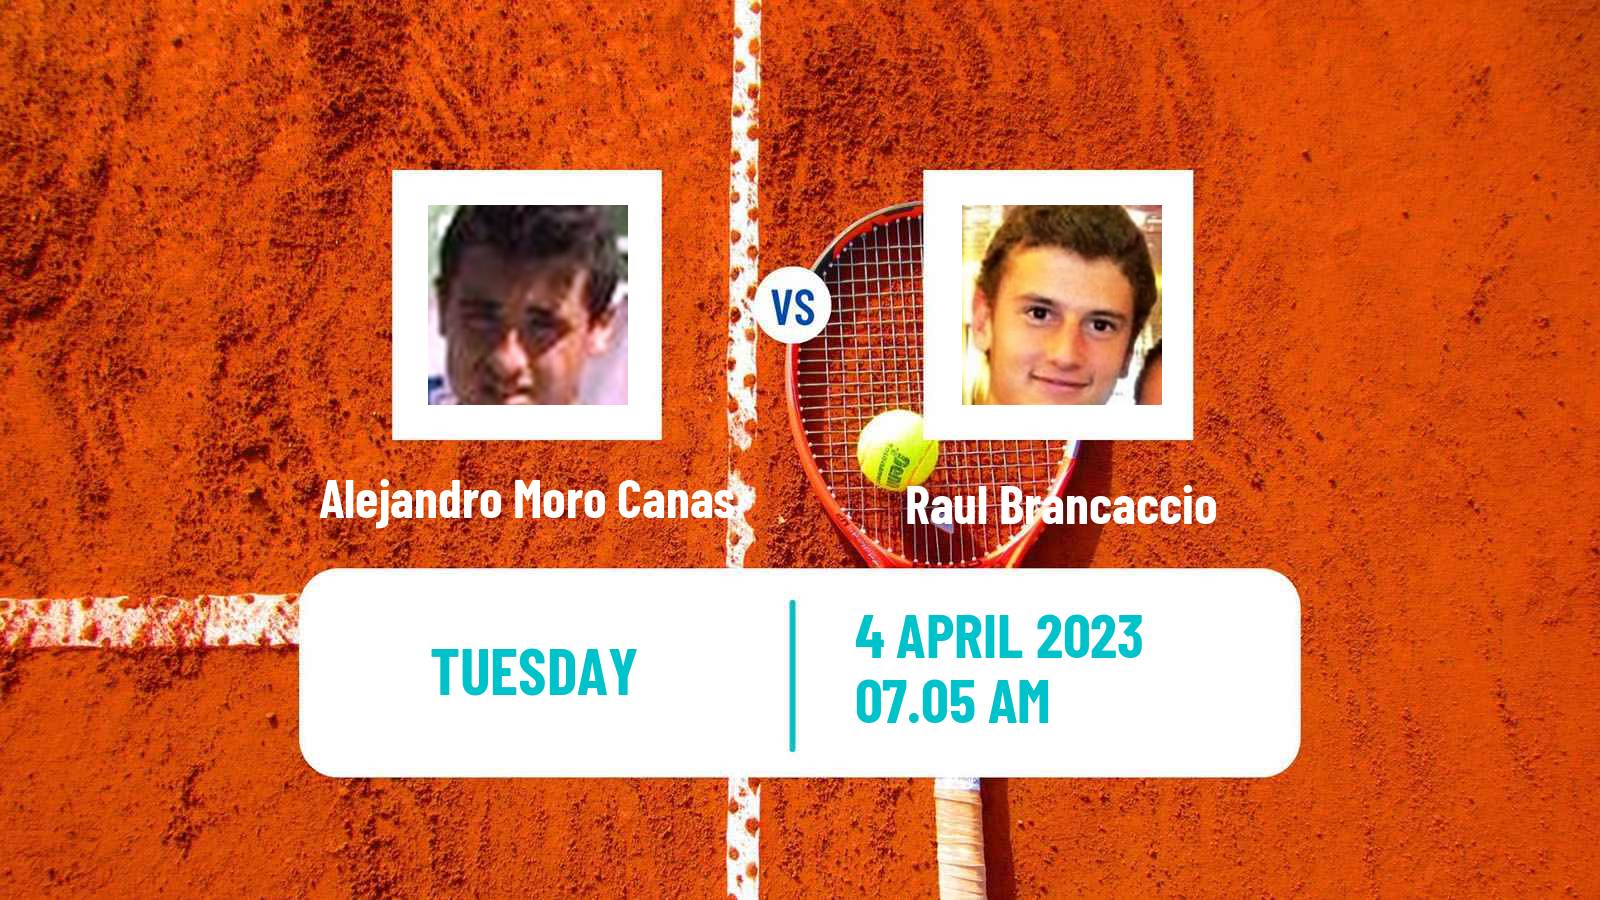 Tennis ATP Challenger Alejandro Moro Canas - Raul Brancaccio